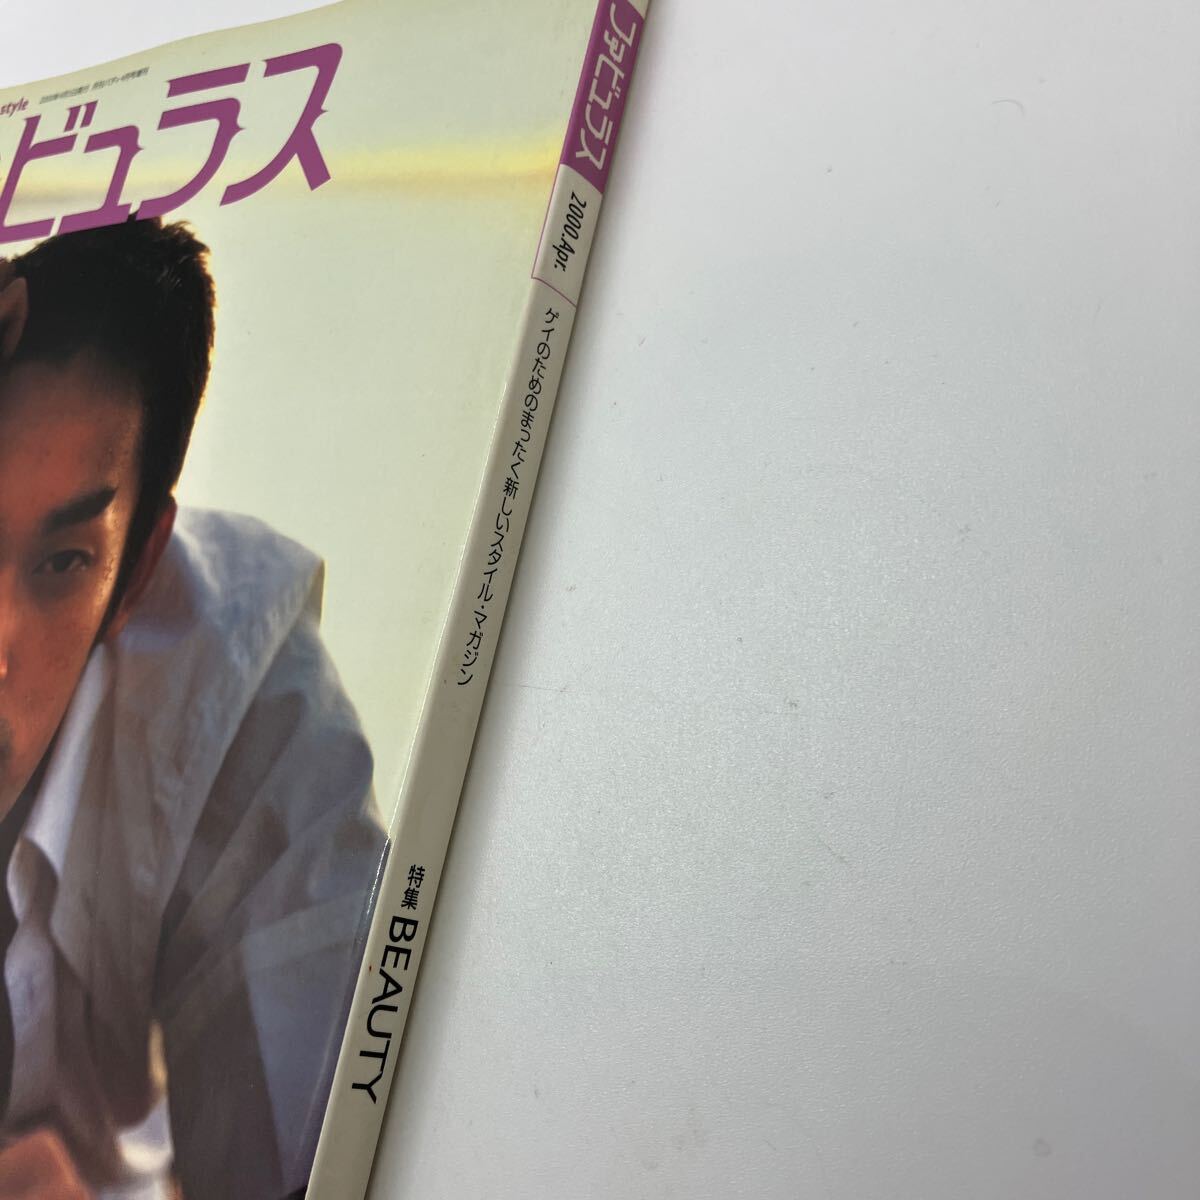 gei журнал fabyulasVol.3gei поэтому. совершенно новый стиль * журнал 2000 год 4 месяц выпуск Hasegawa sadao осмотр )ji- men роза группа 